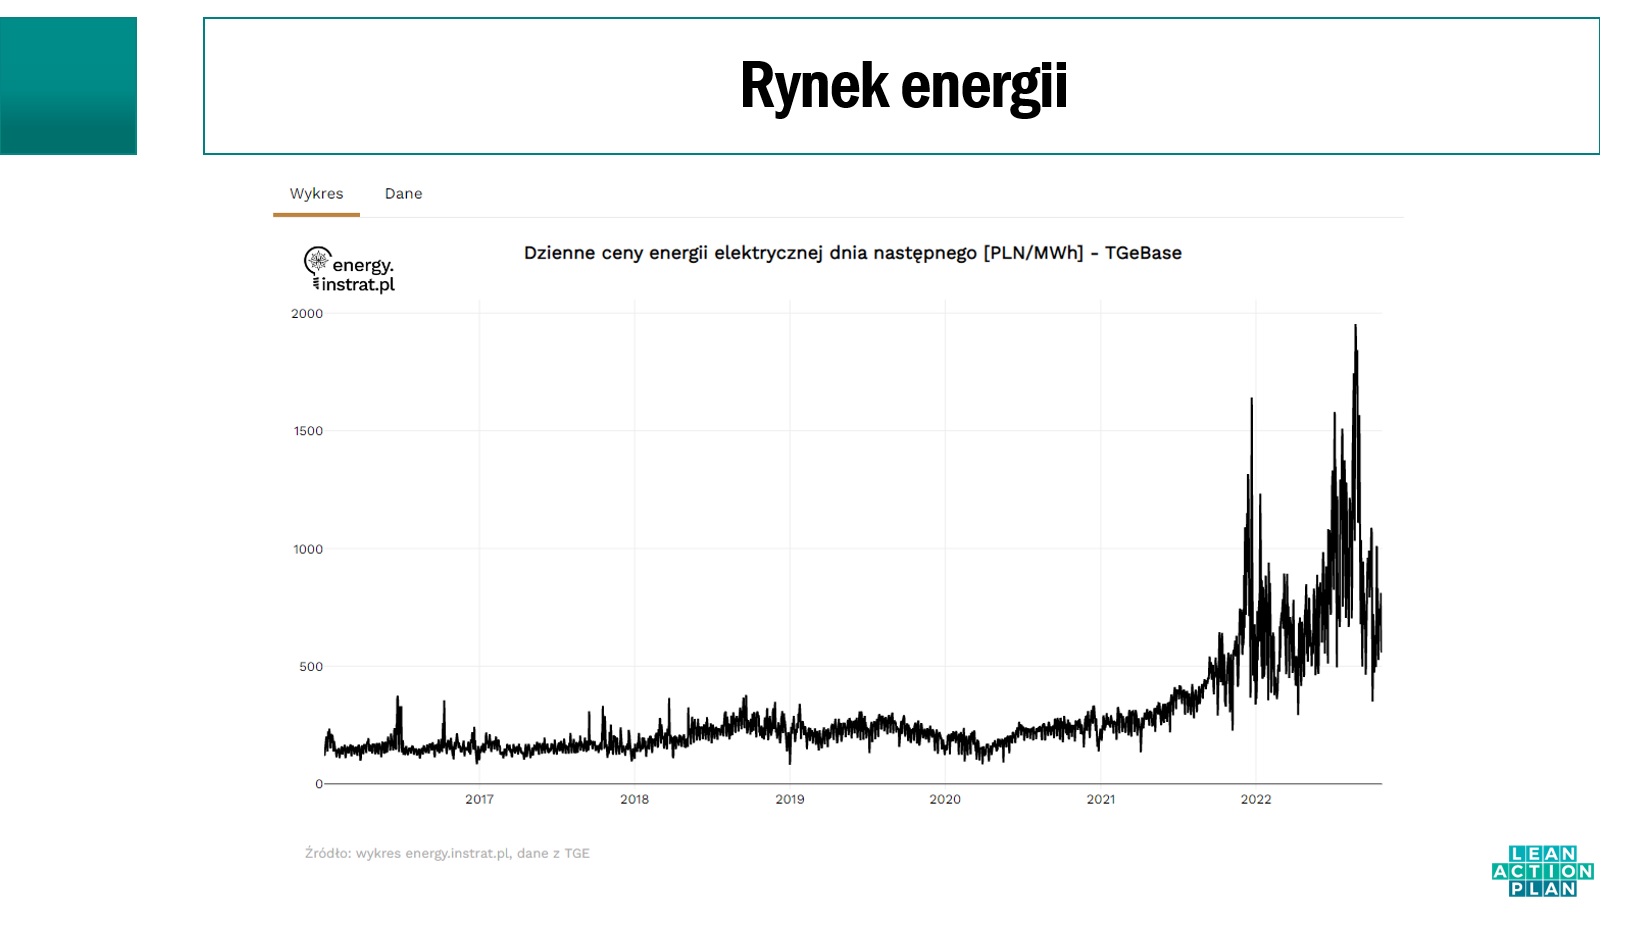 Wykres rynku energii